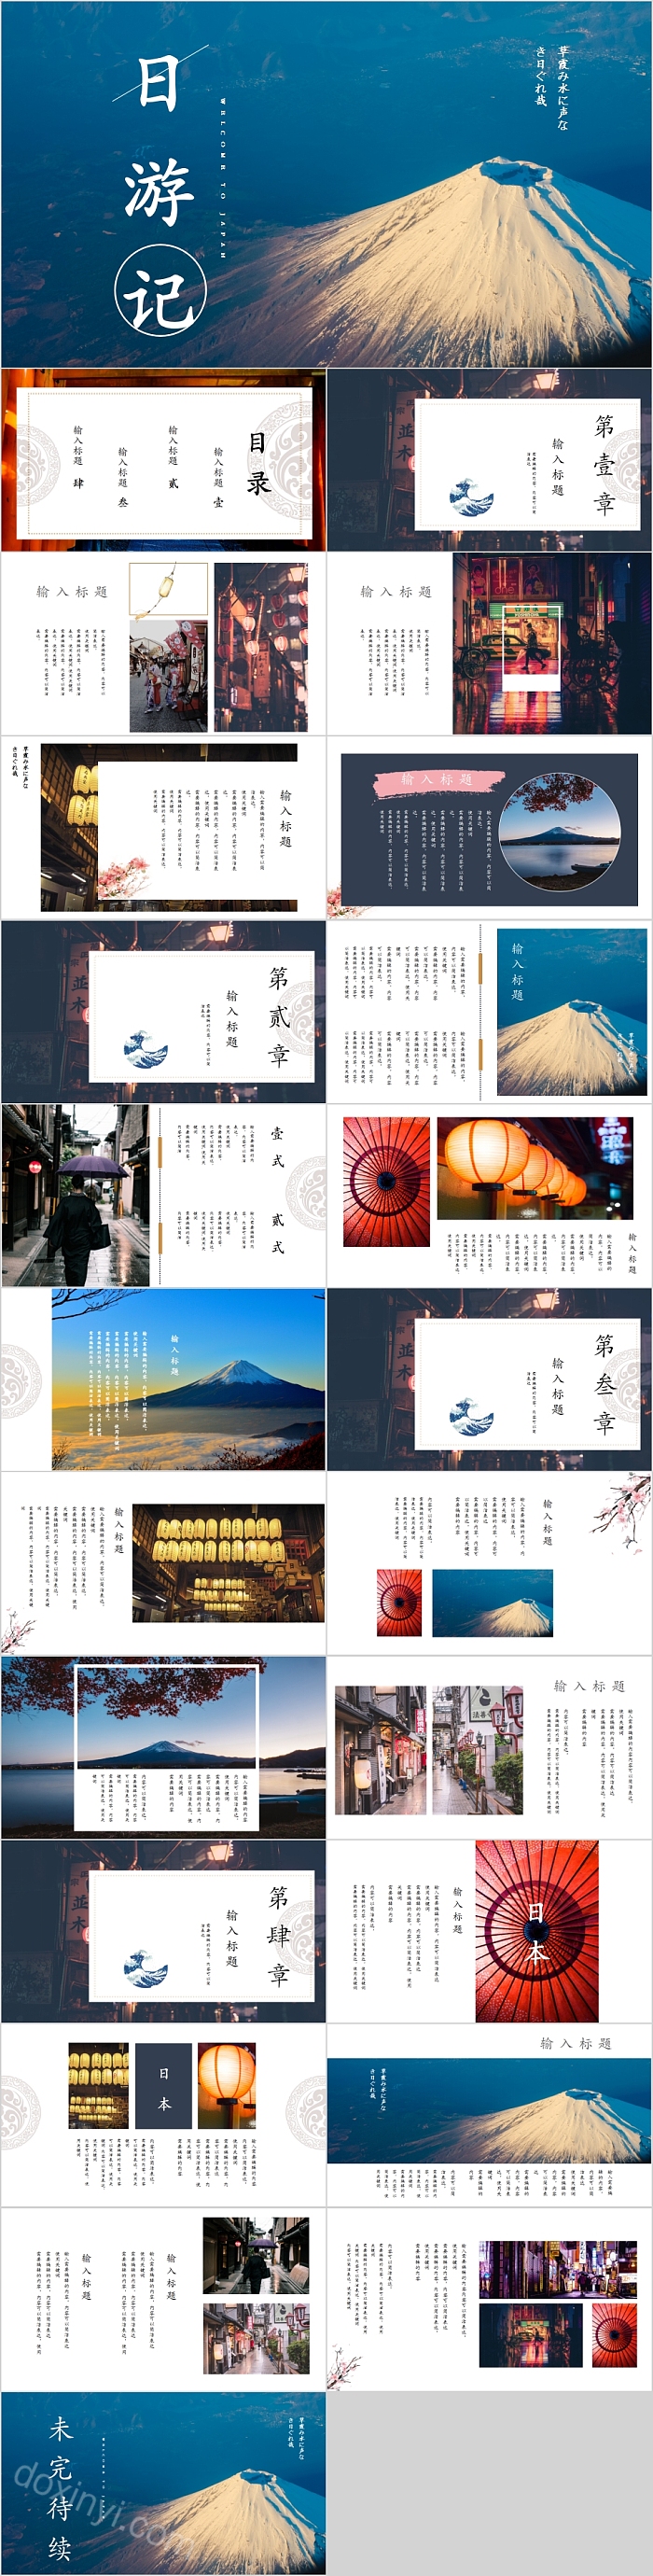 日本旅游宣传相册PPT模板